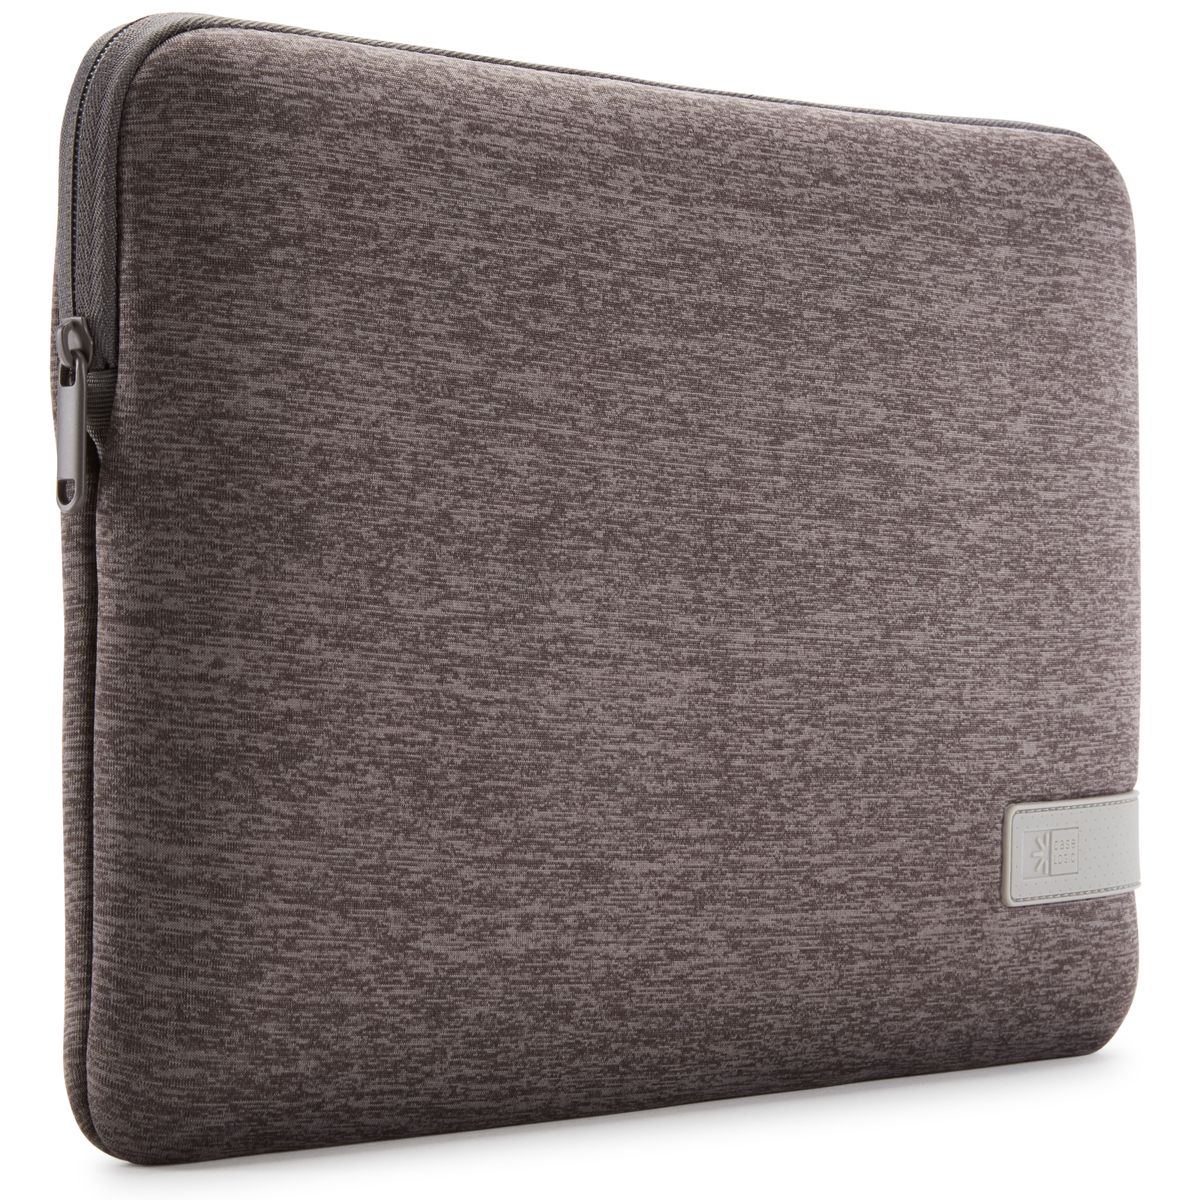 Case Logic Reflect Laptop Sleeve 14" laptop sleeve